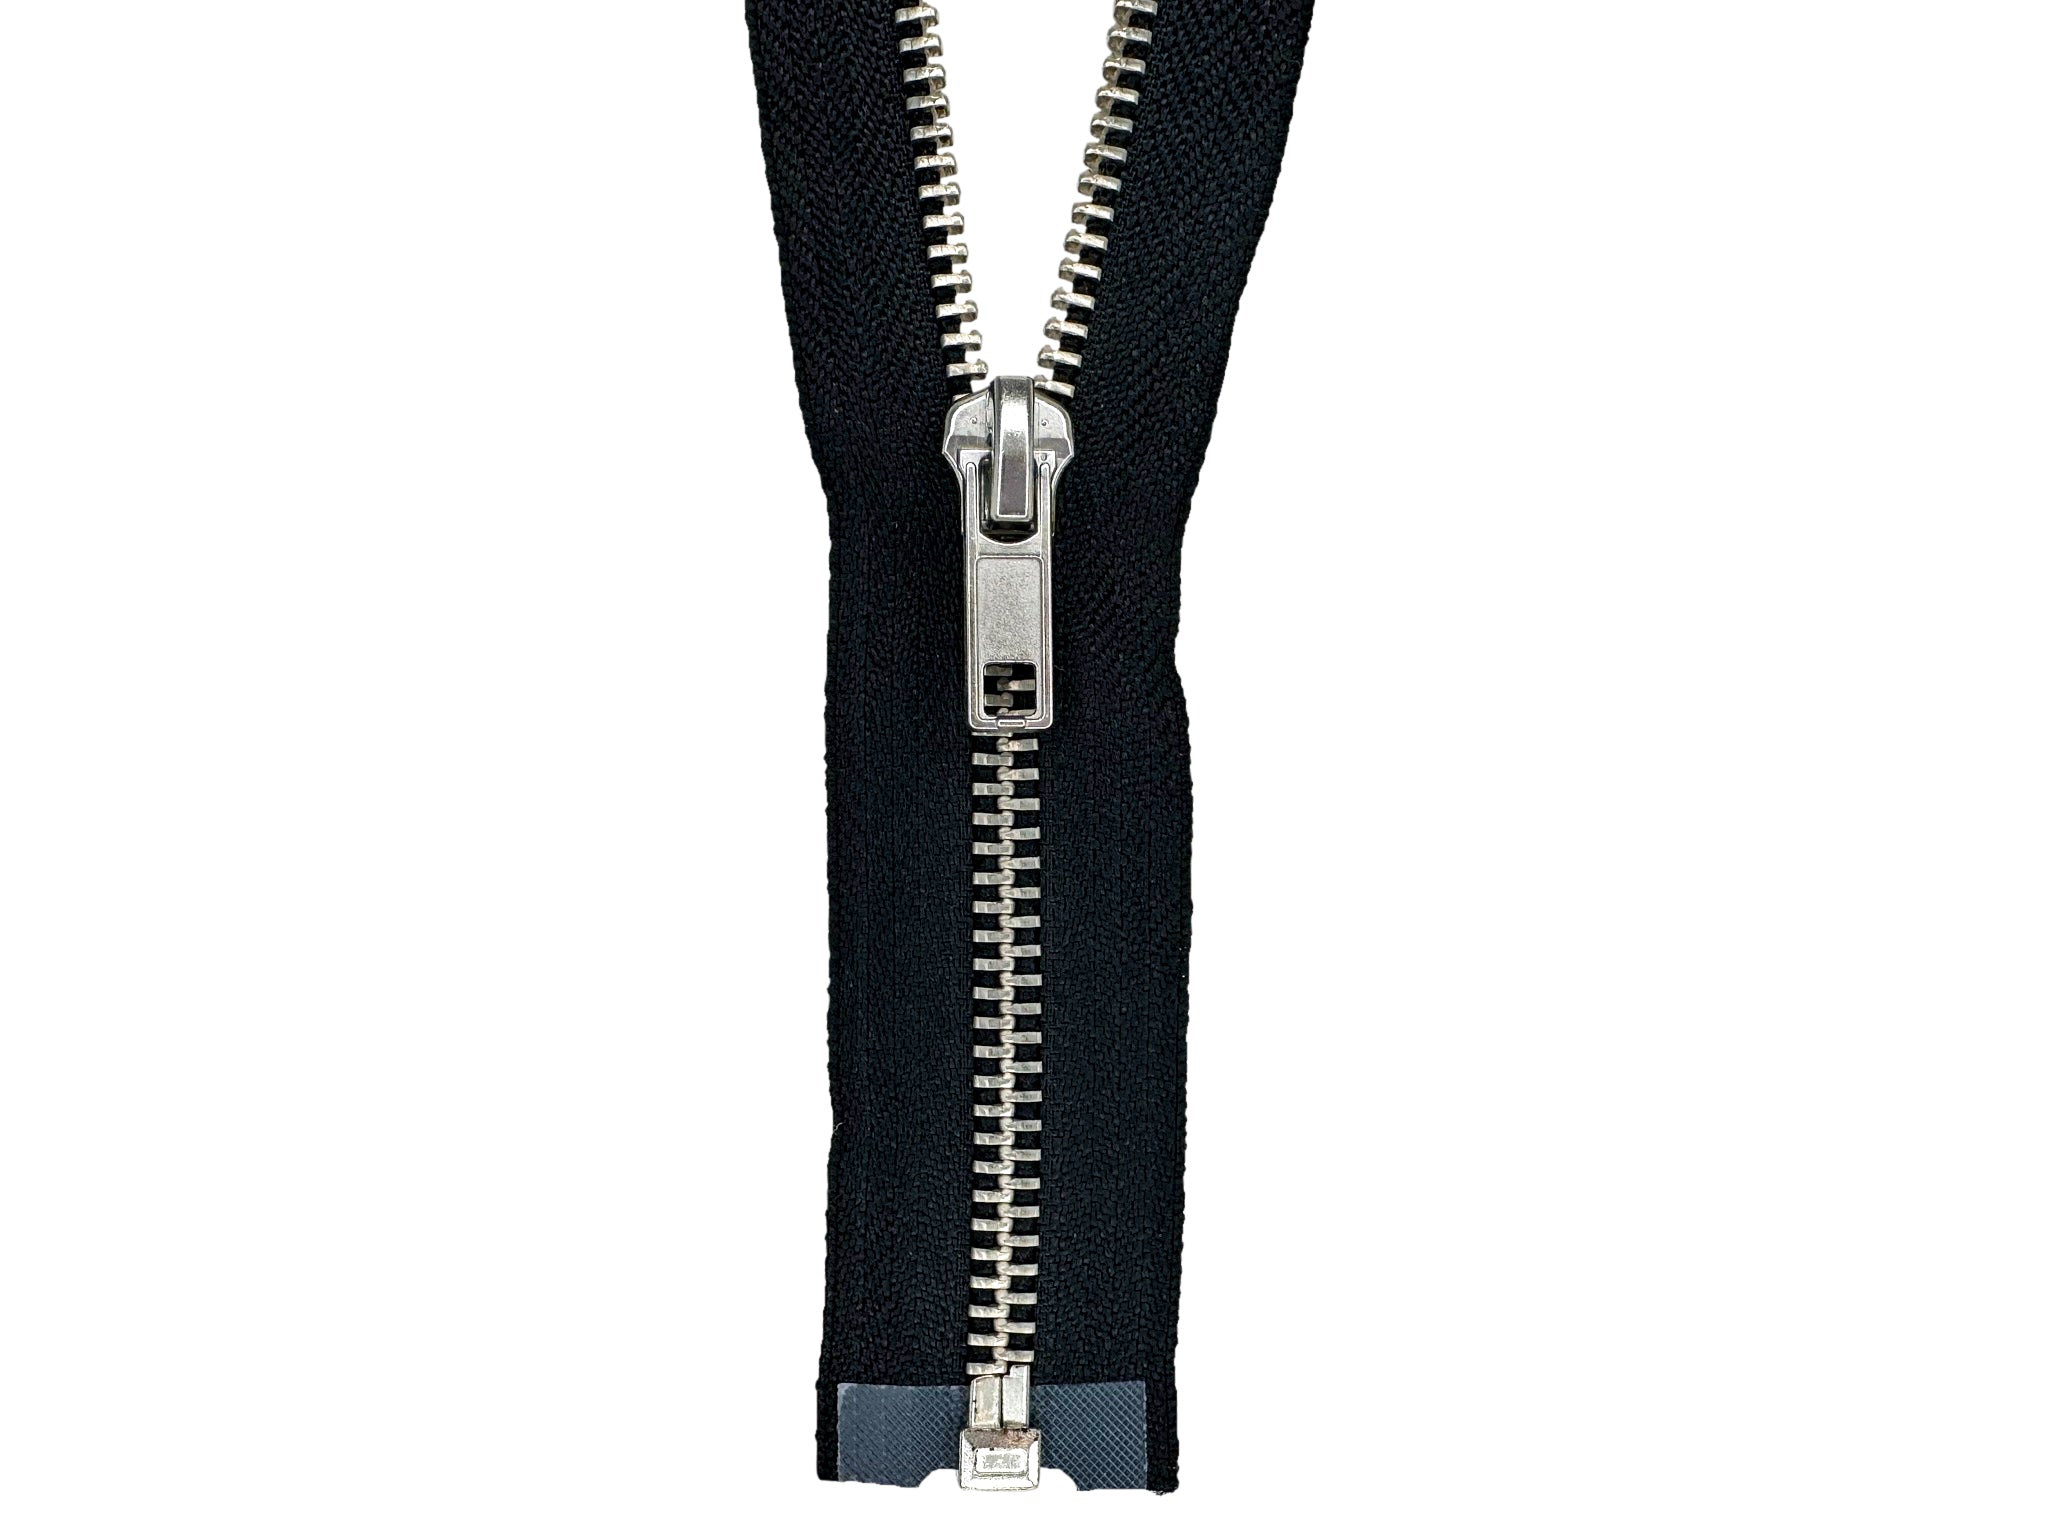  14 inch Invisible Zipper Black Non Separating Zipper